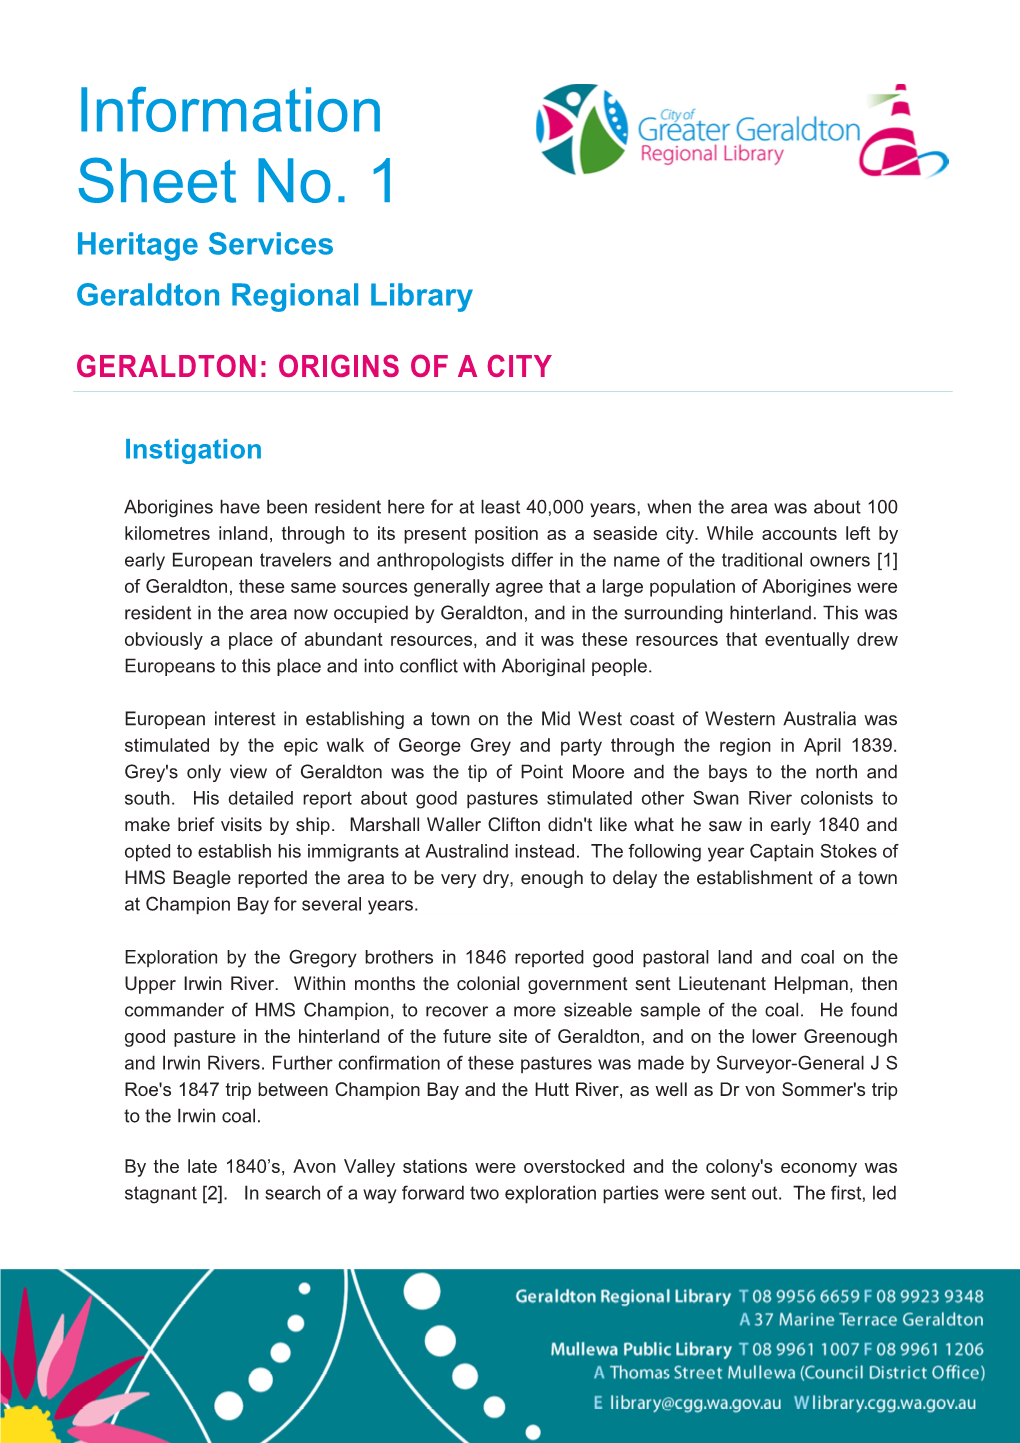 Geraldton Origins of a City